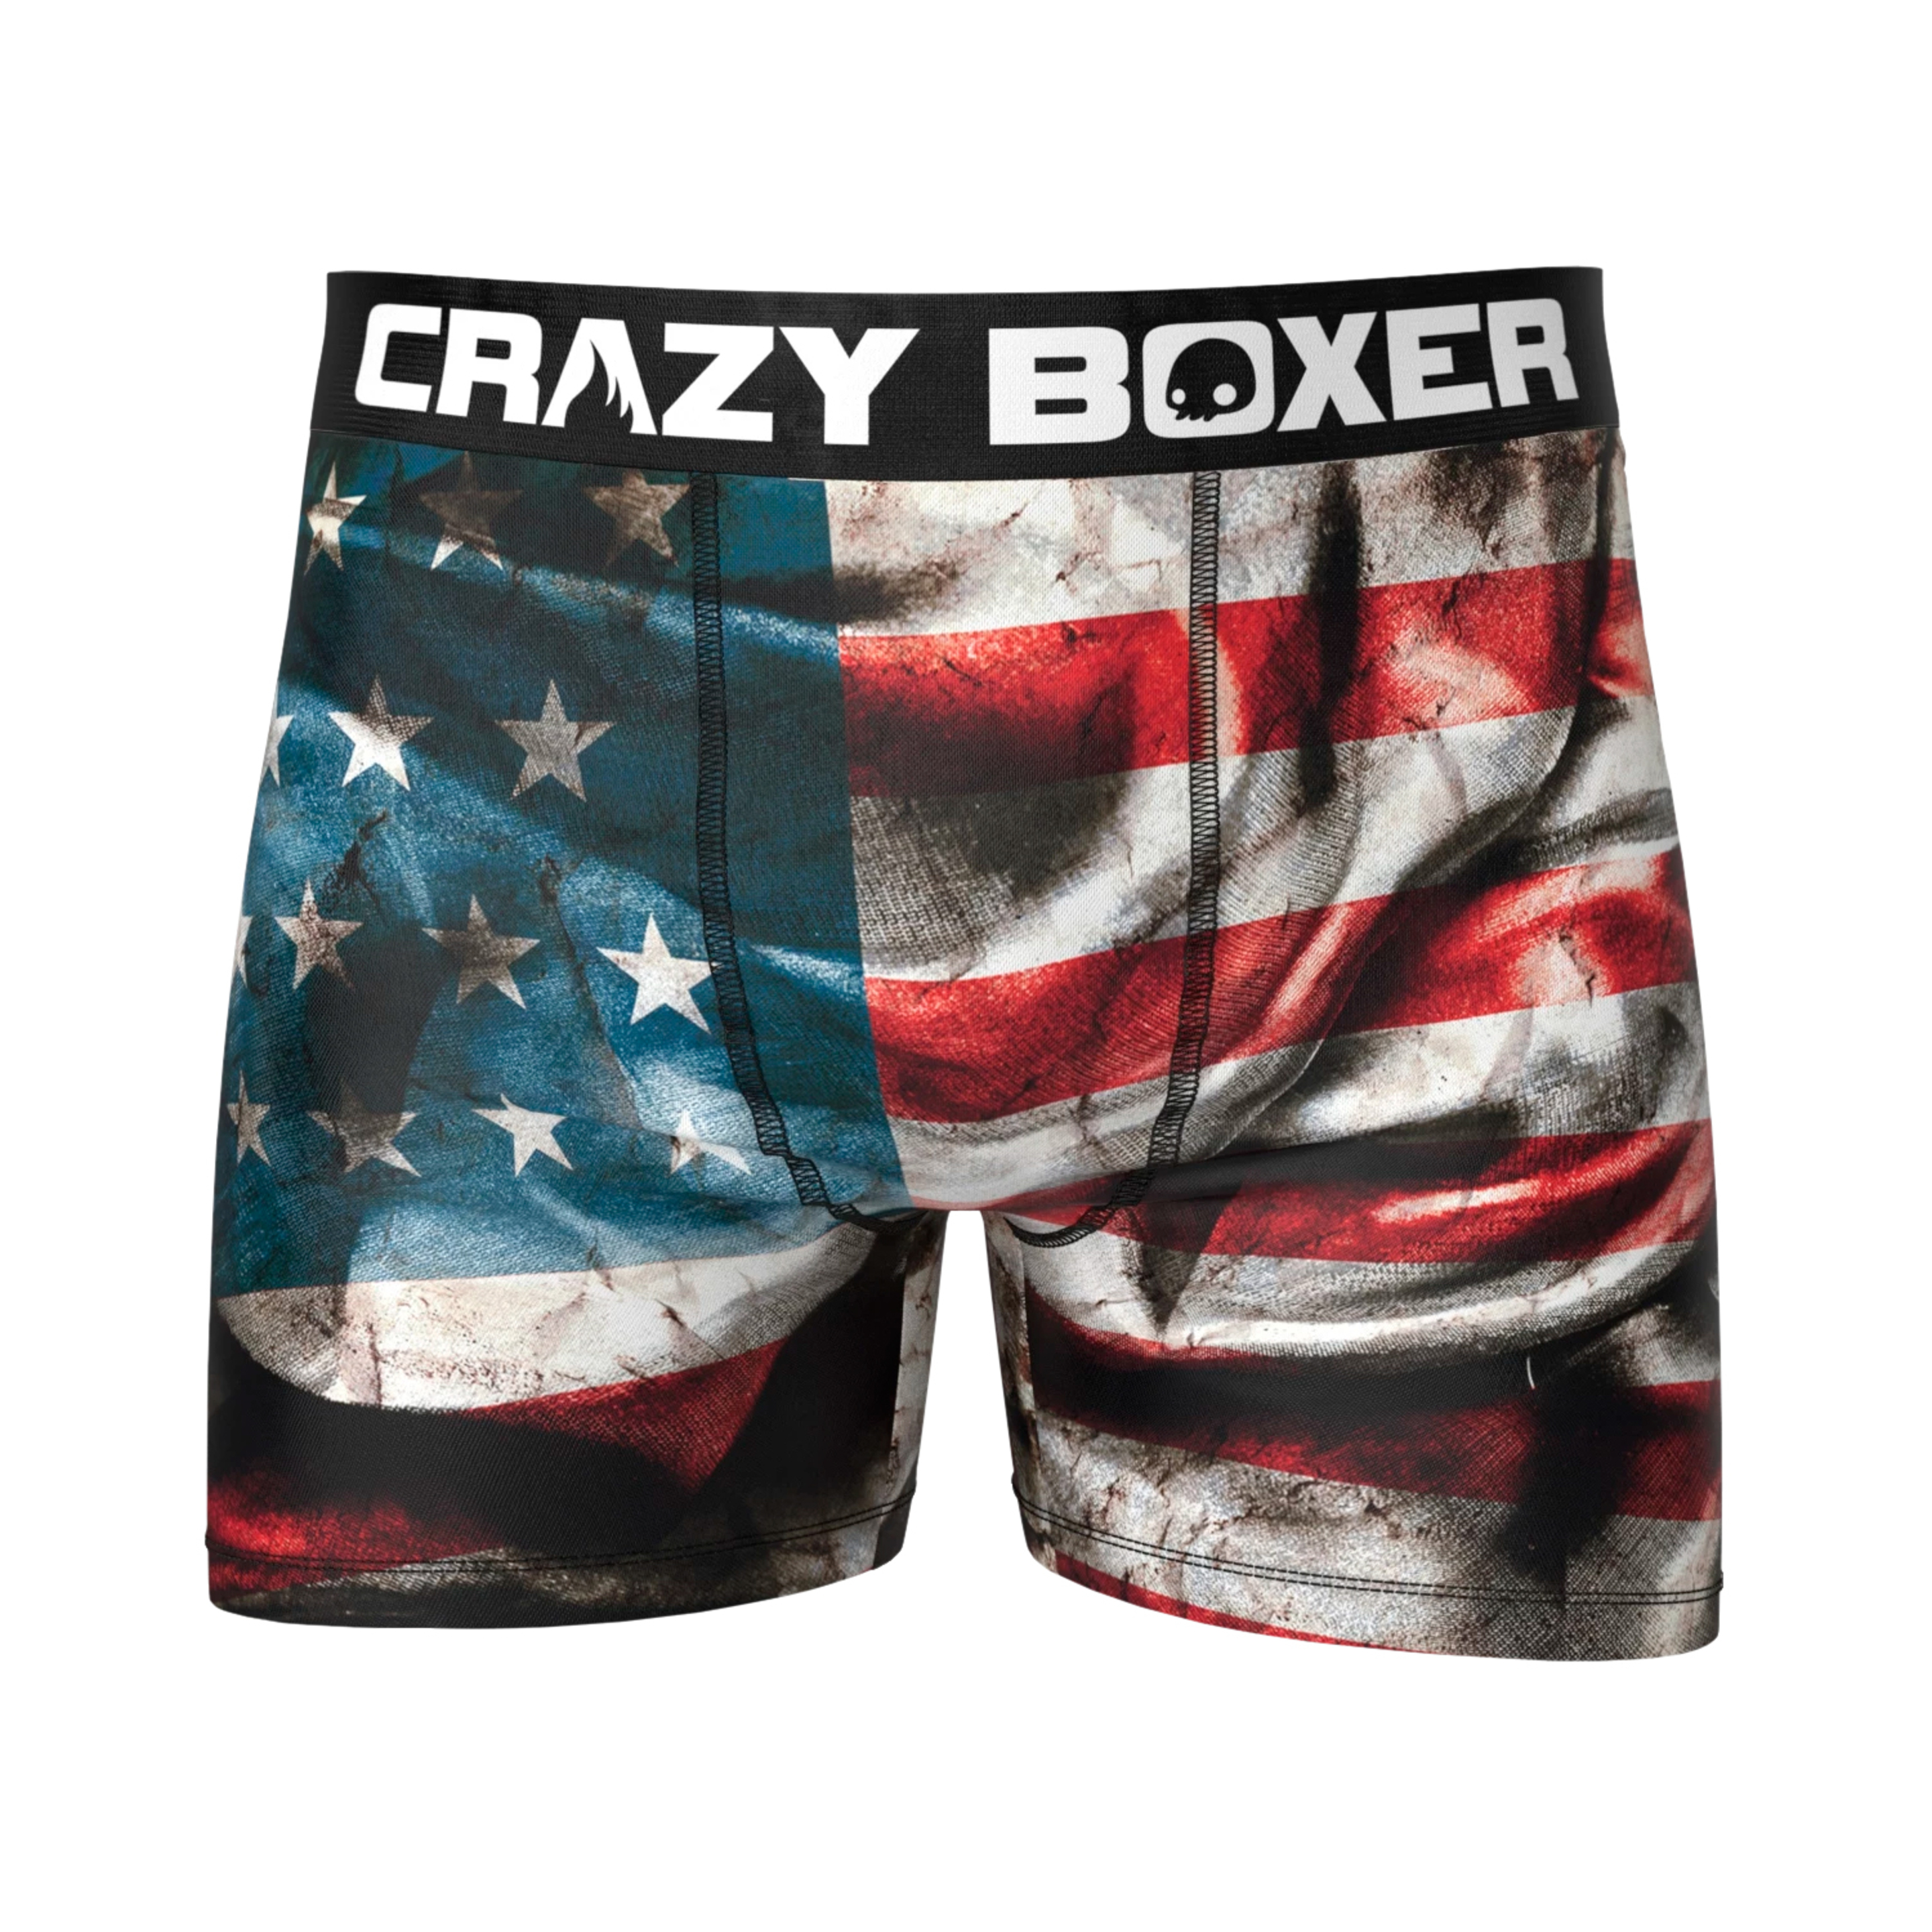 Calzoncillos Bandera Crazy Boxer Usa